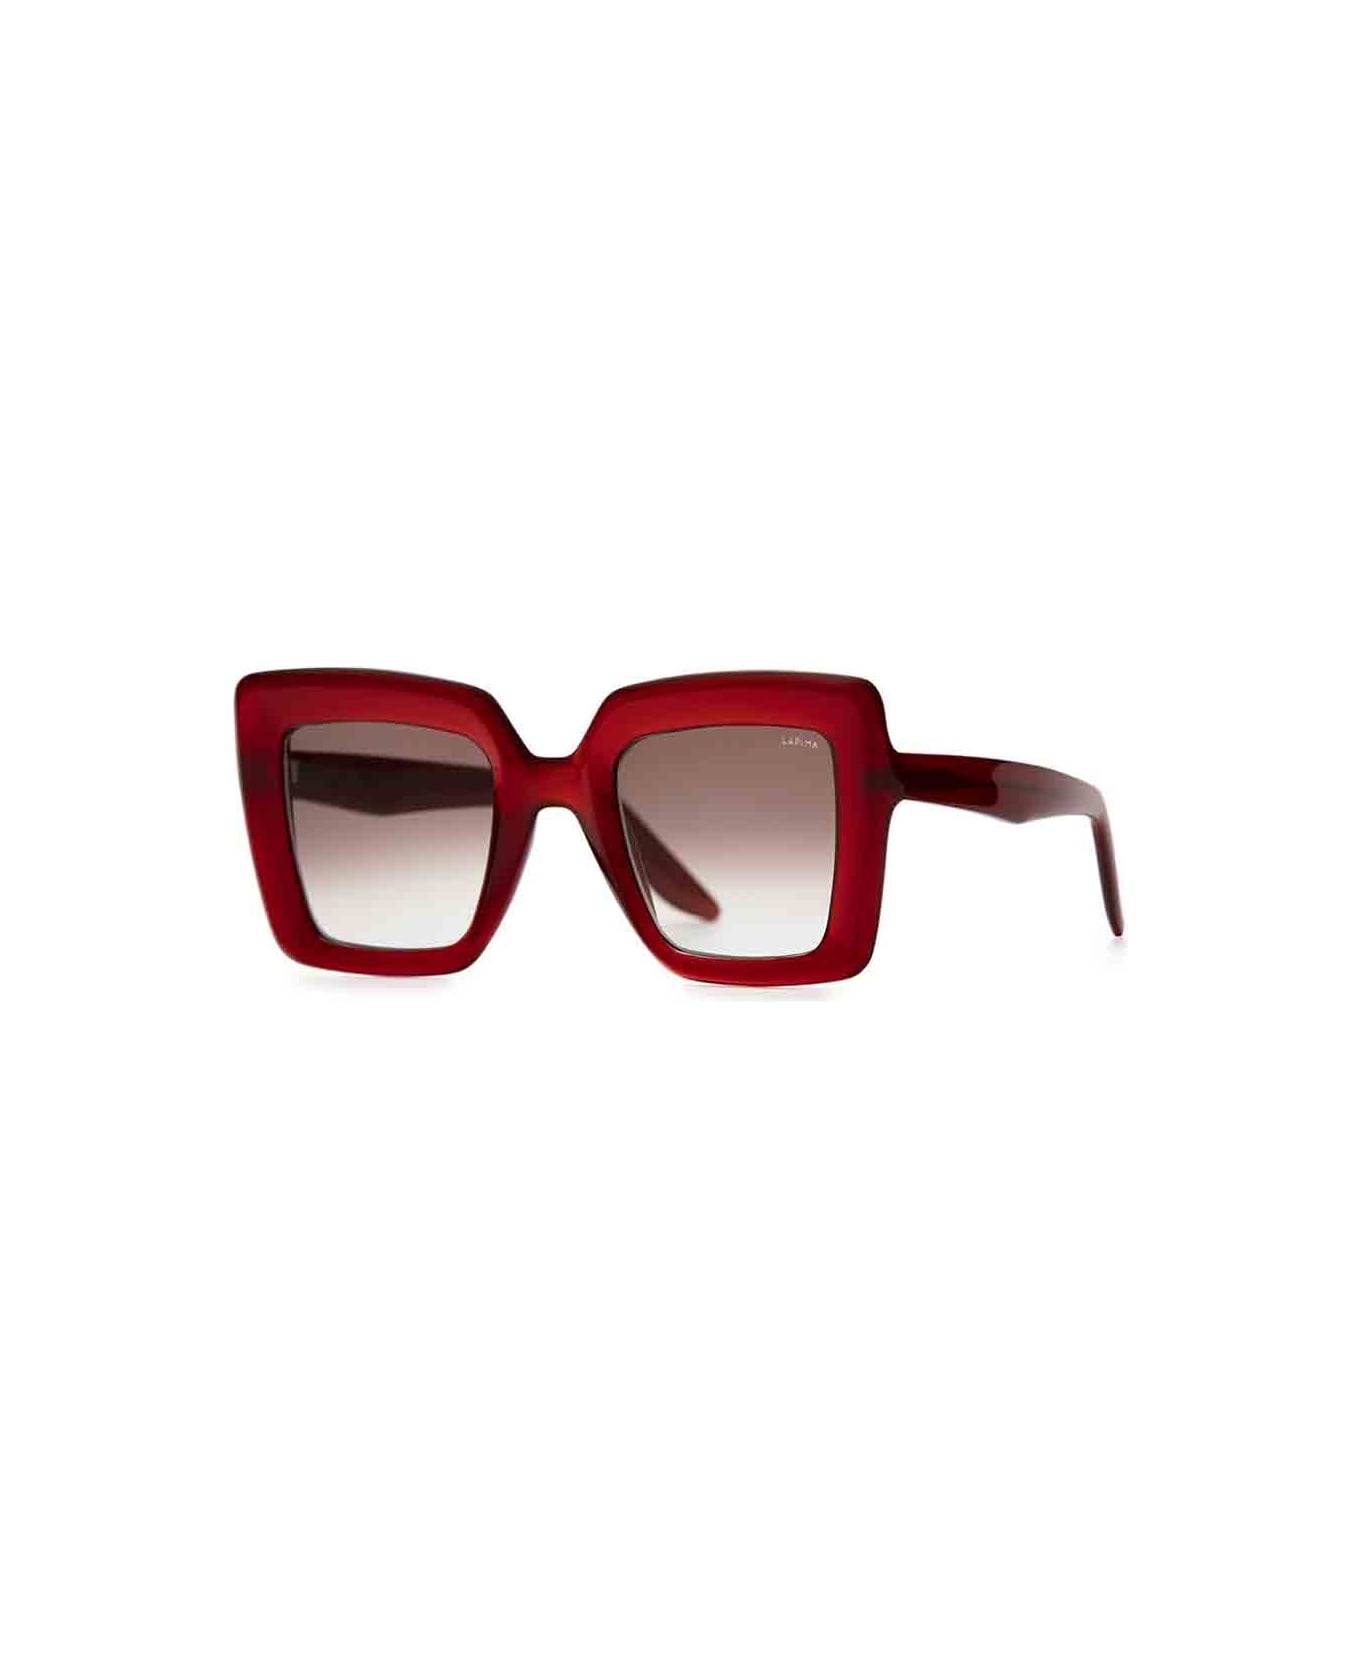 Lapima Eyewear - Rosso/Marrone アイウェア